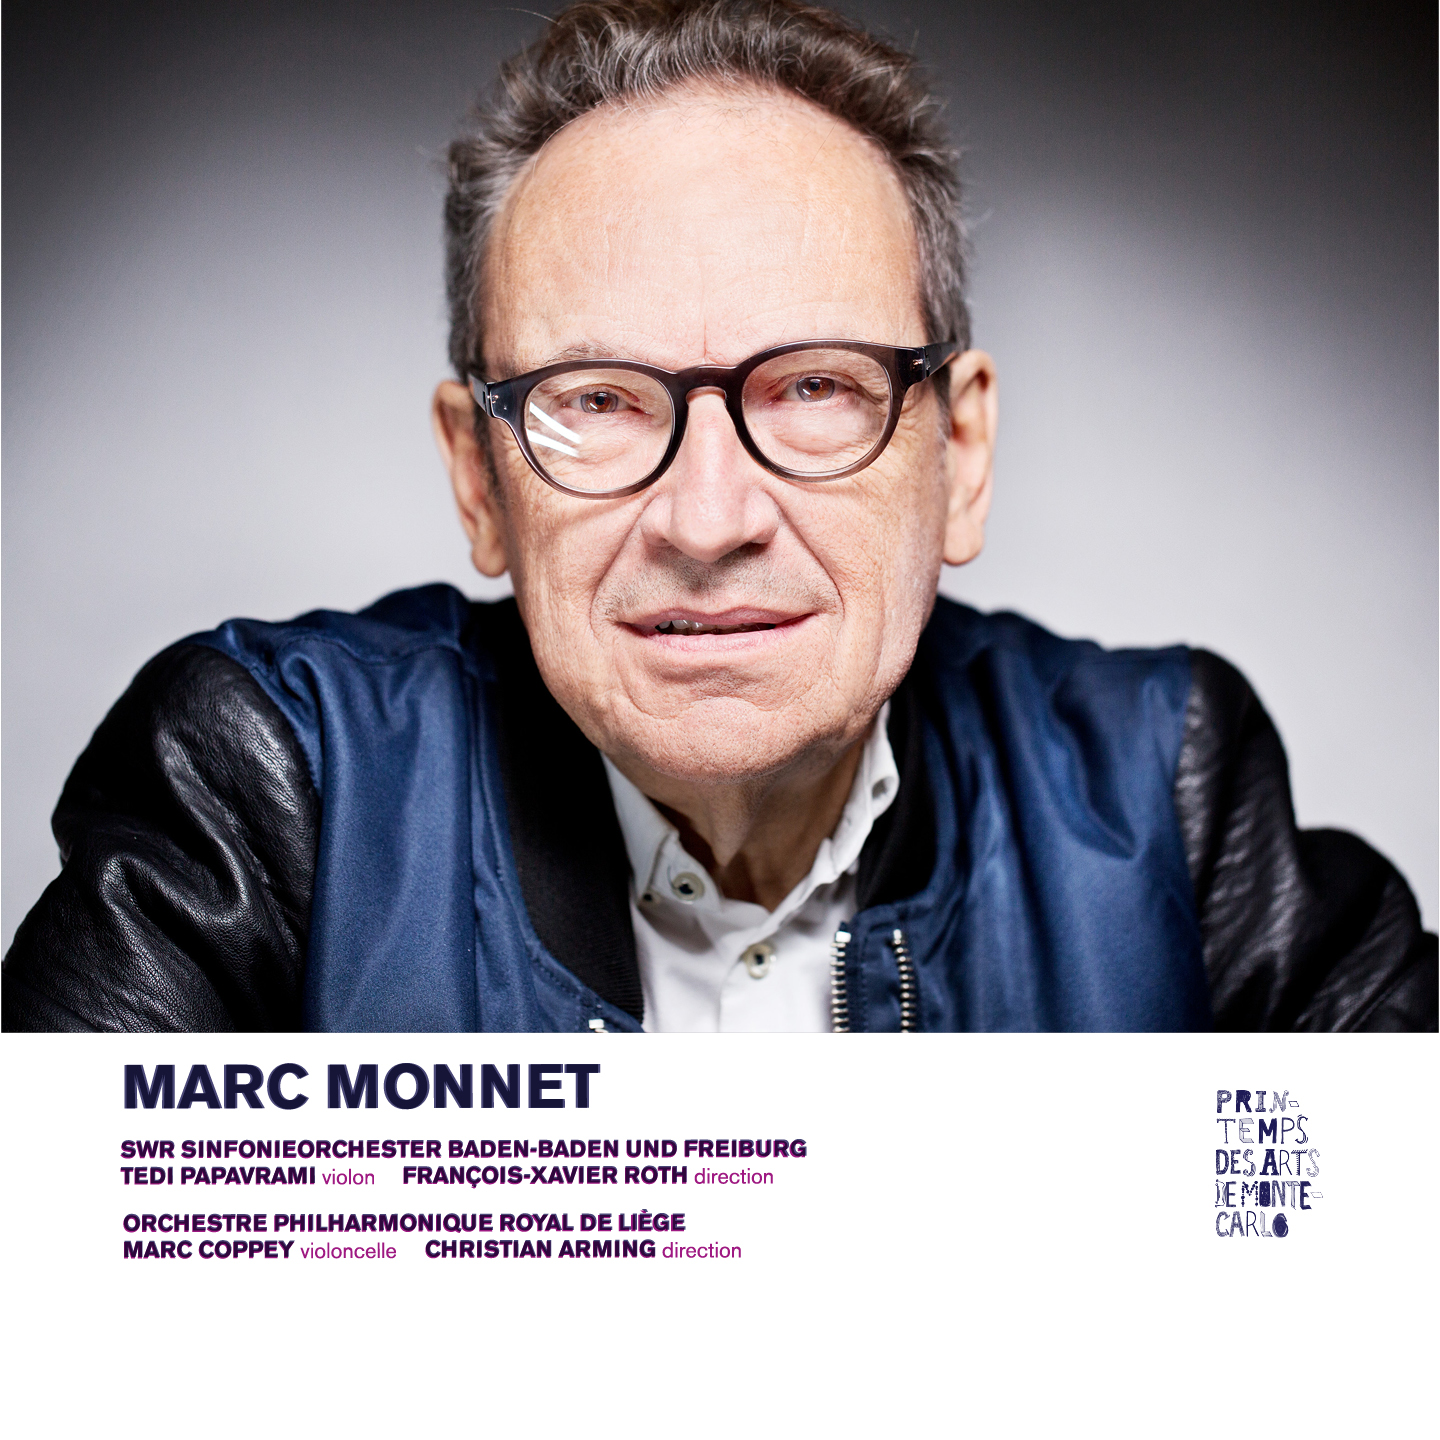 Grand prix international de la Musique Contemporaine a été attribué à Marc Monnet